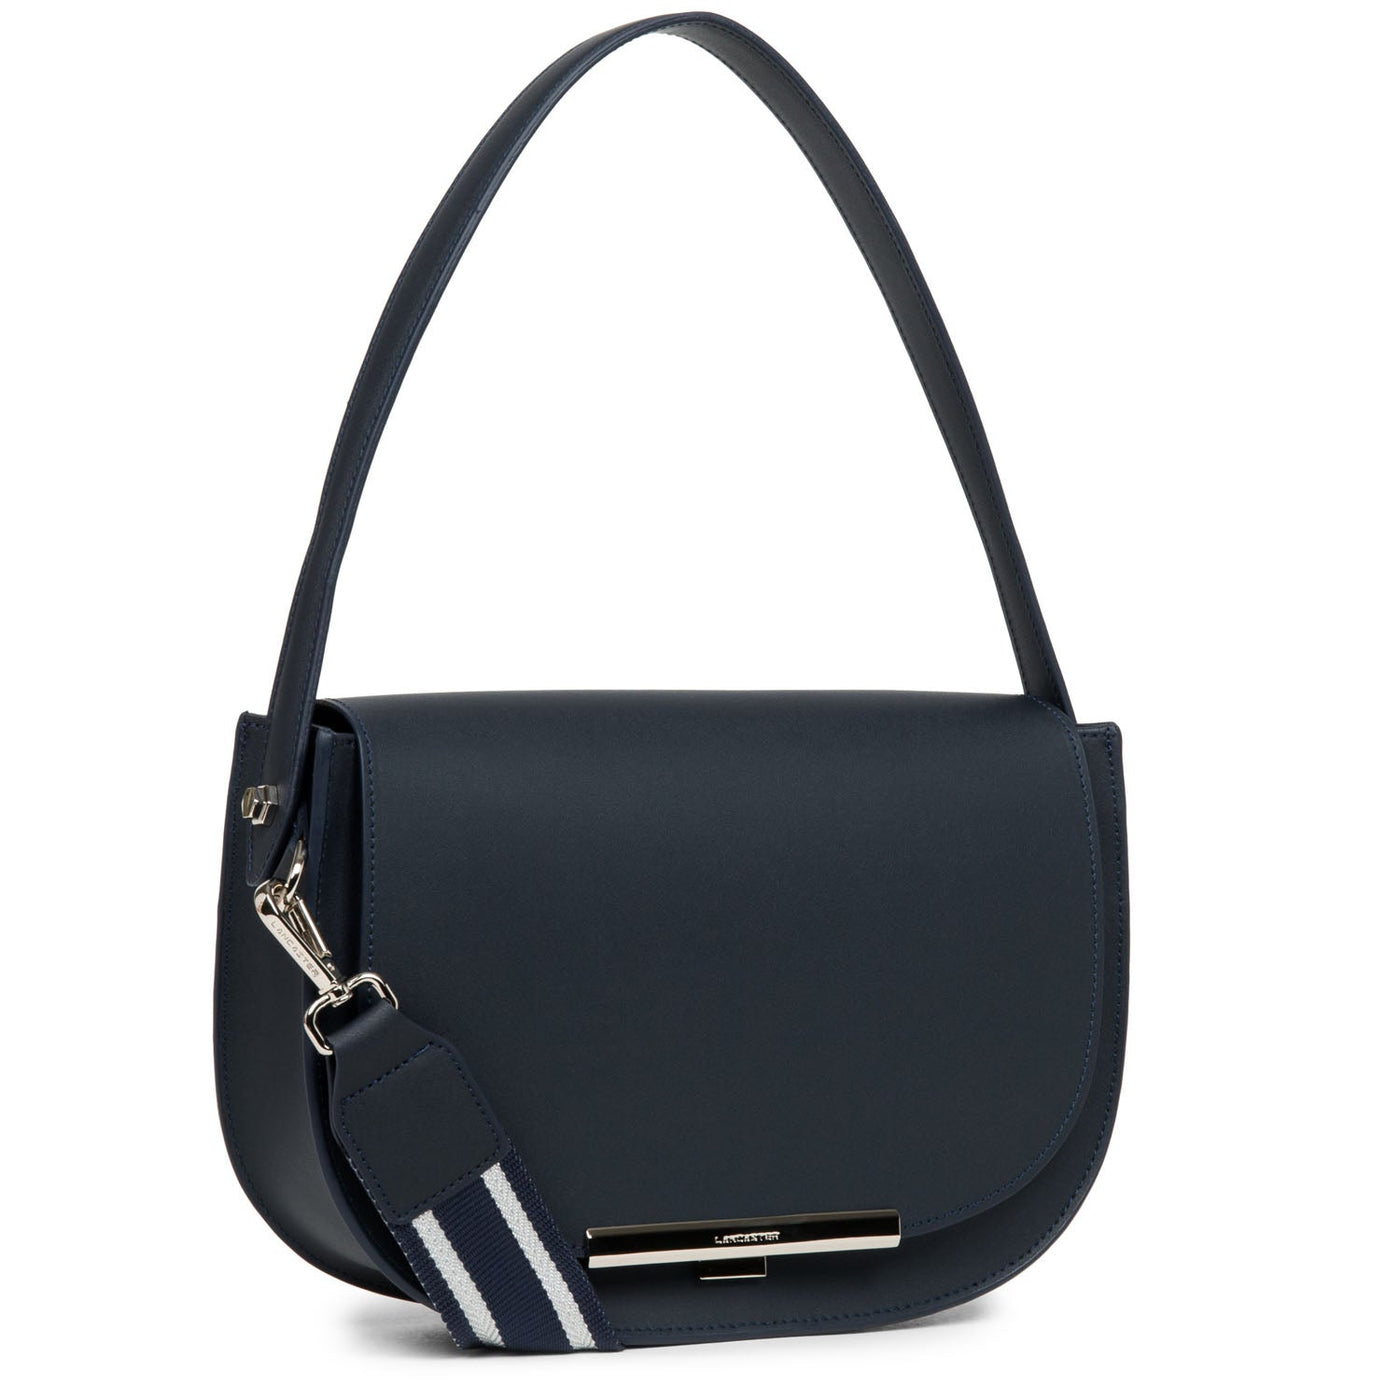 handbag - city lina #couleur_bleu-fonc